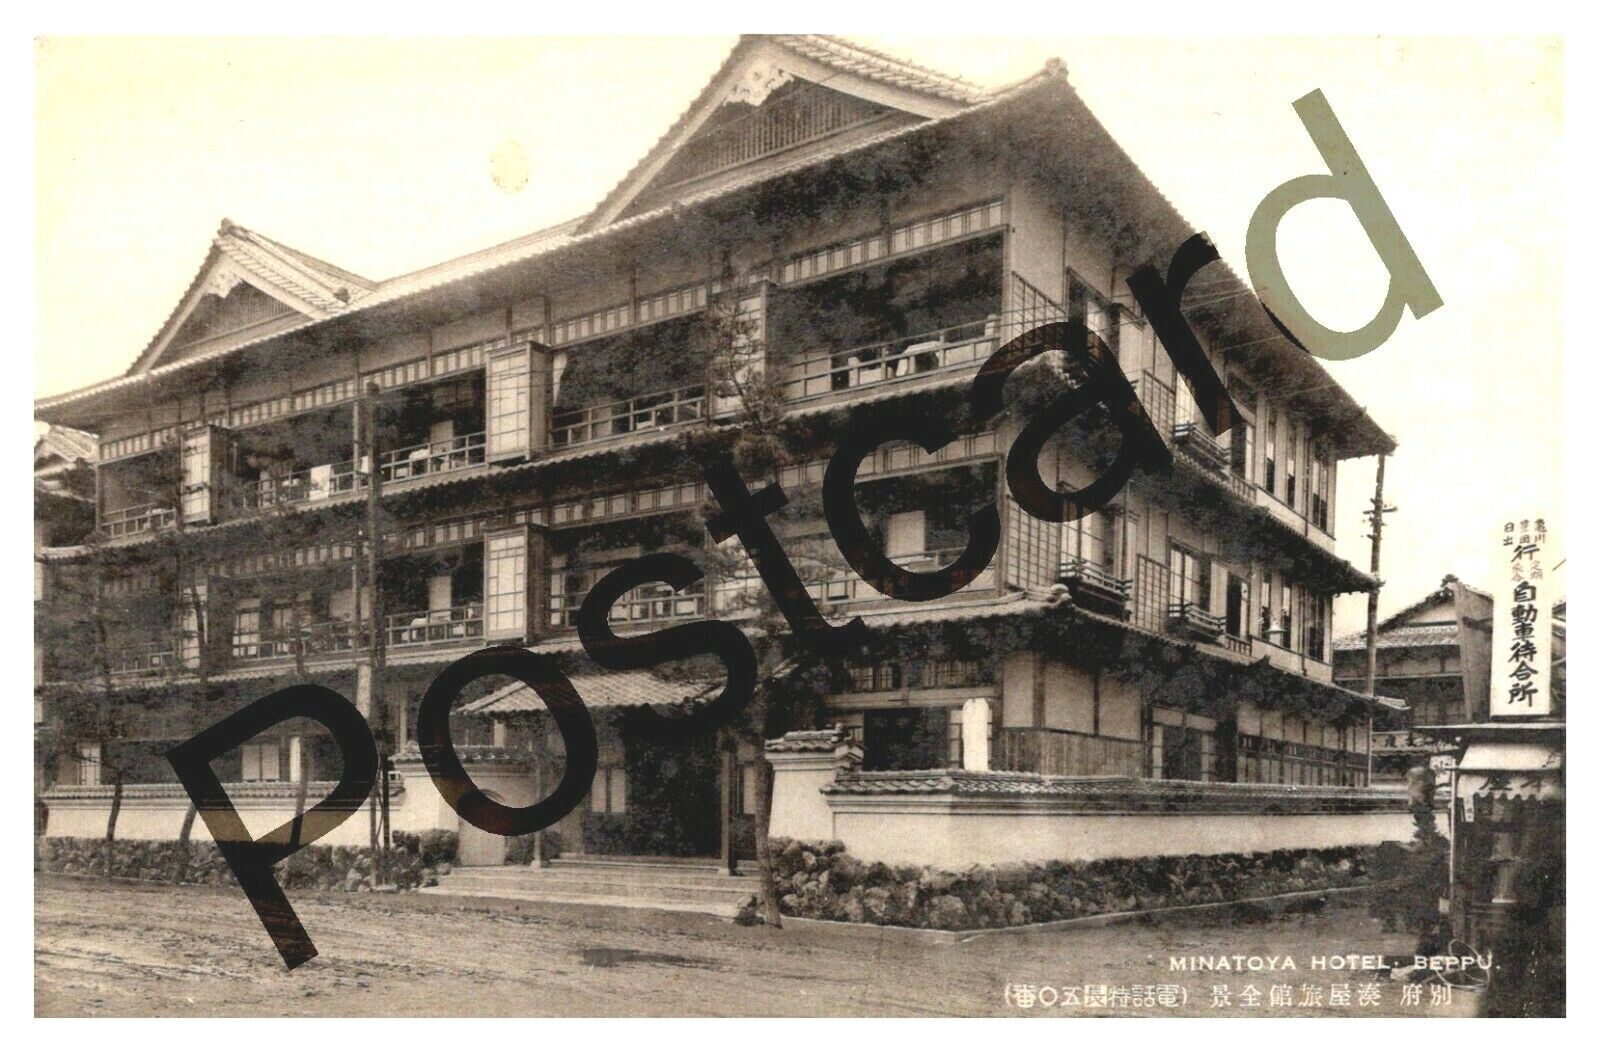 MINATOYA HOTEL, BEPPU, Japan. postcard jj020